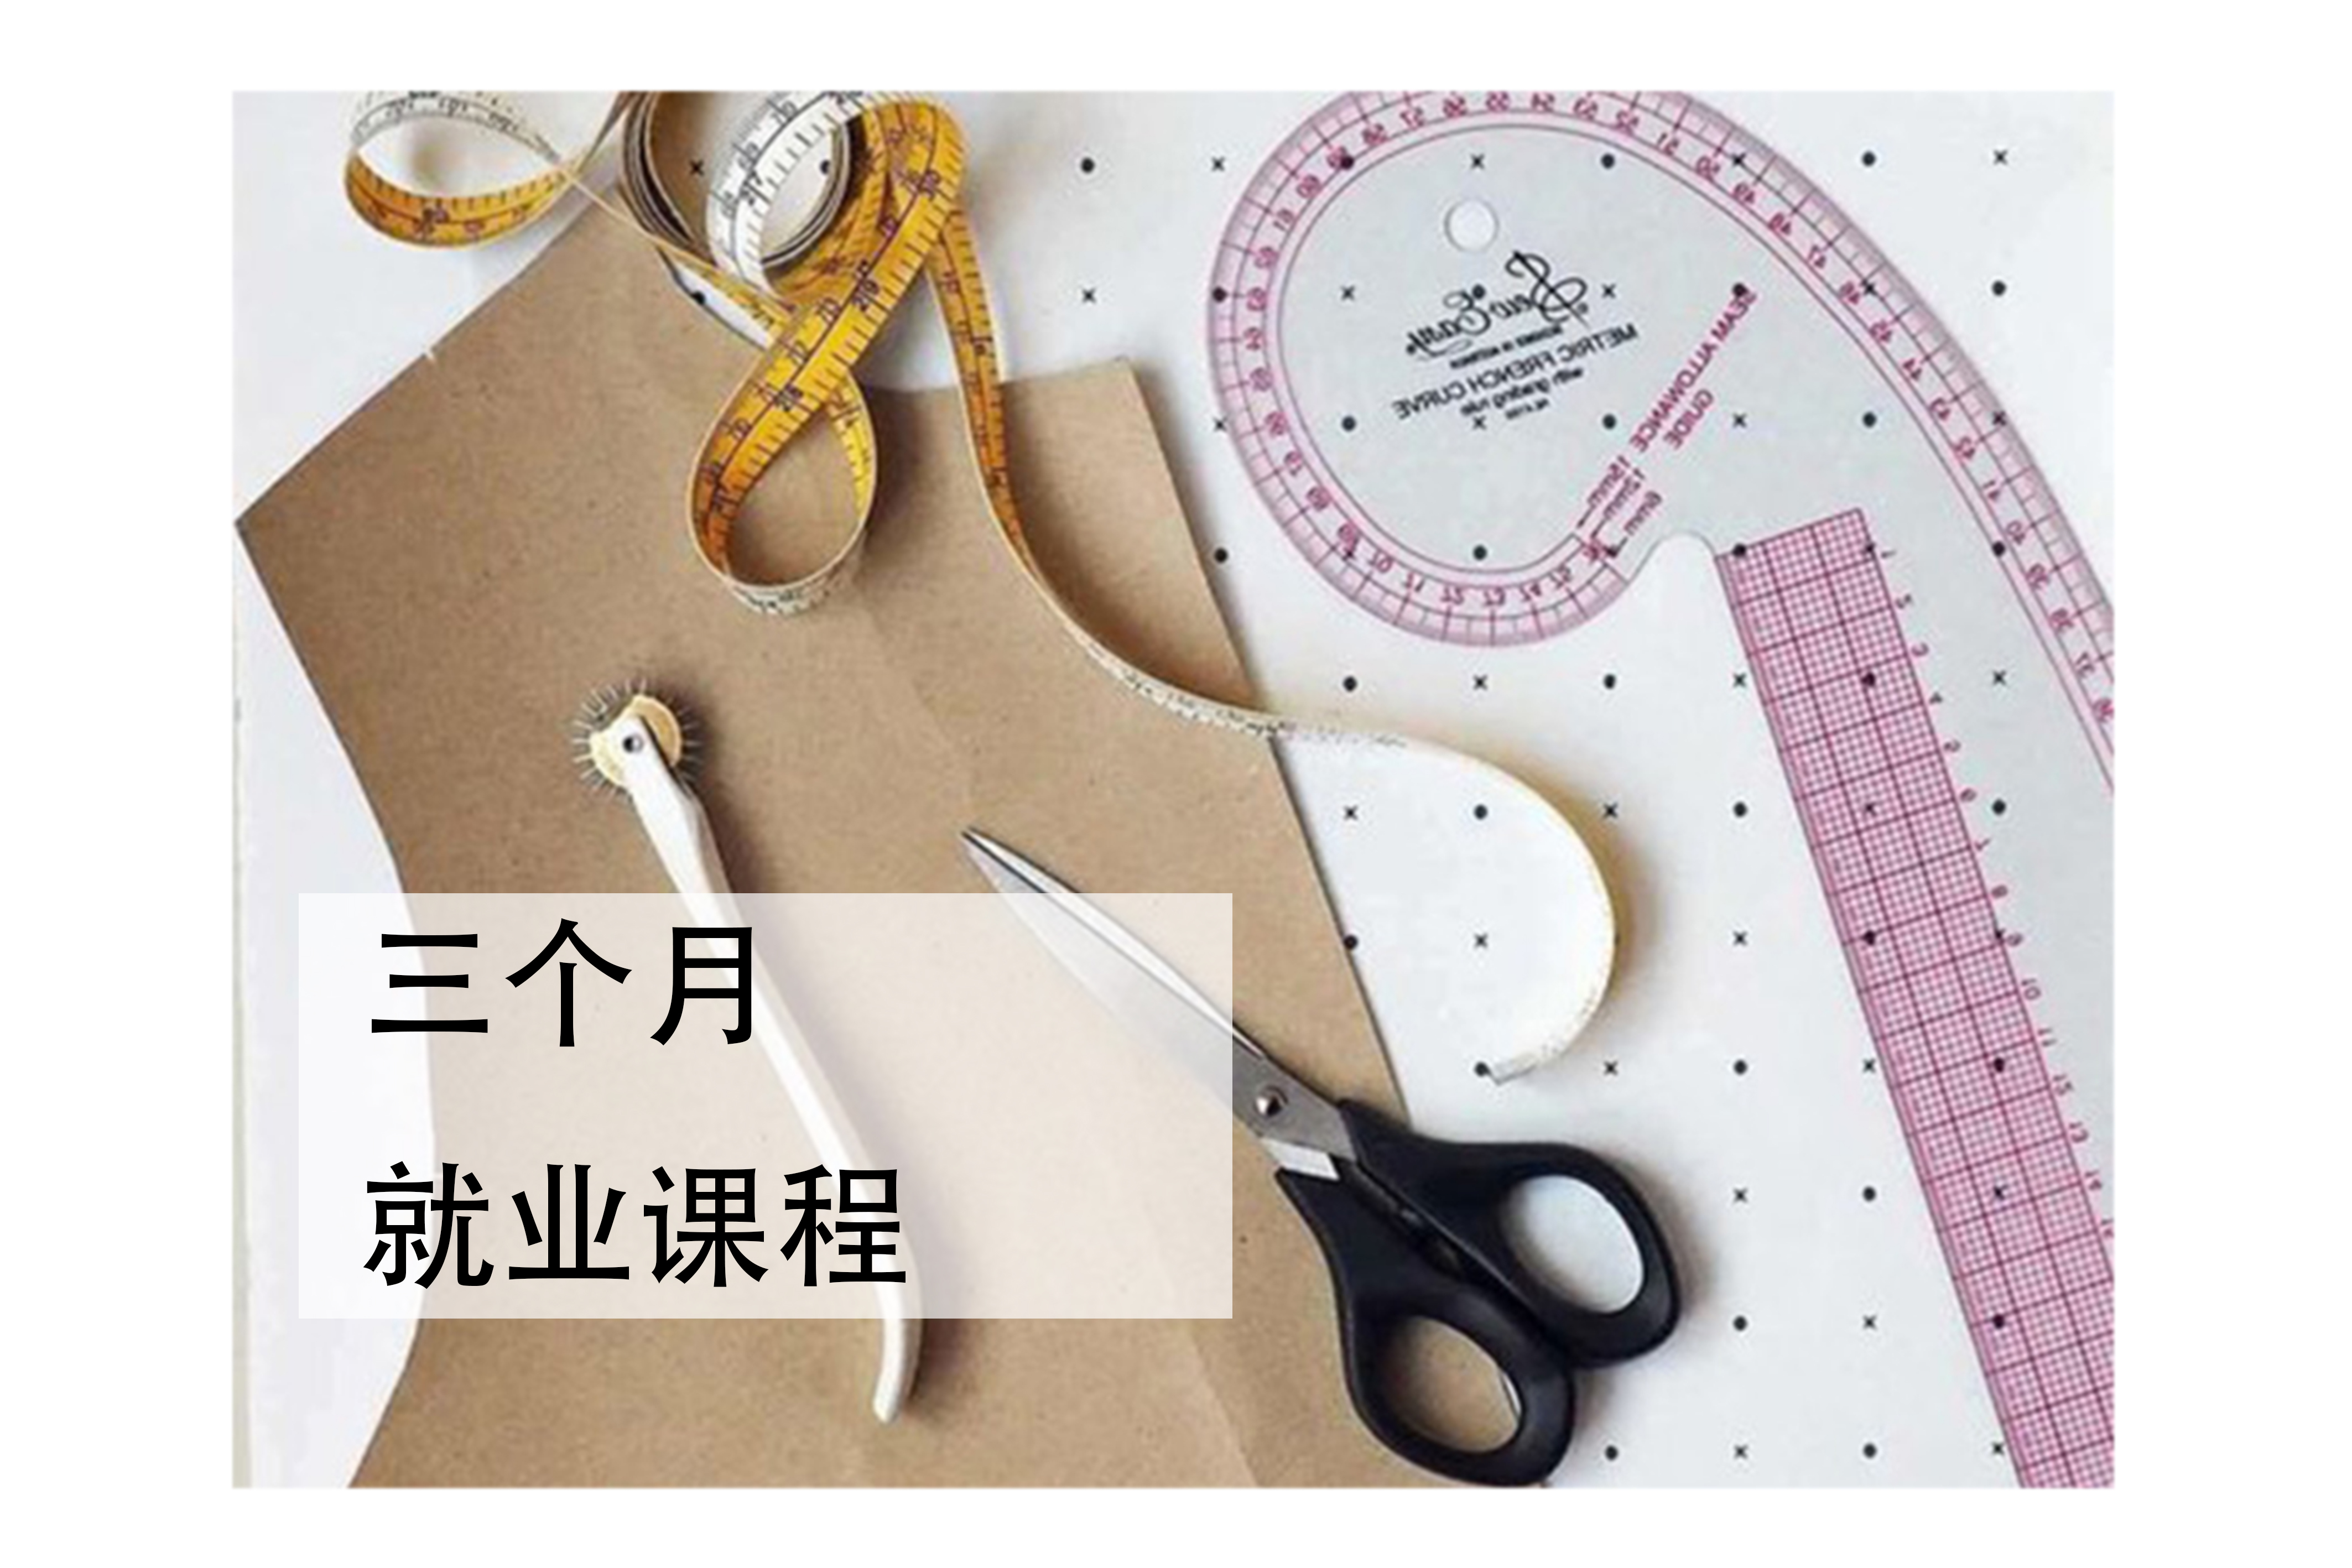 IAS服装设计学院深圳服装设计就业培训课程图片